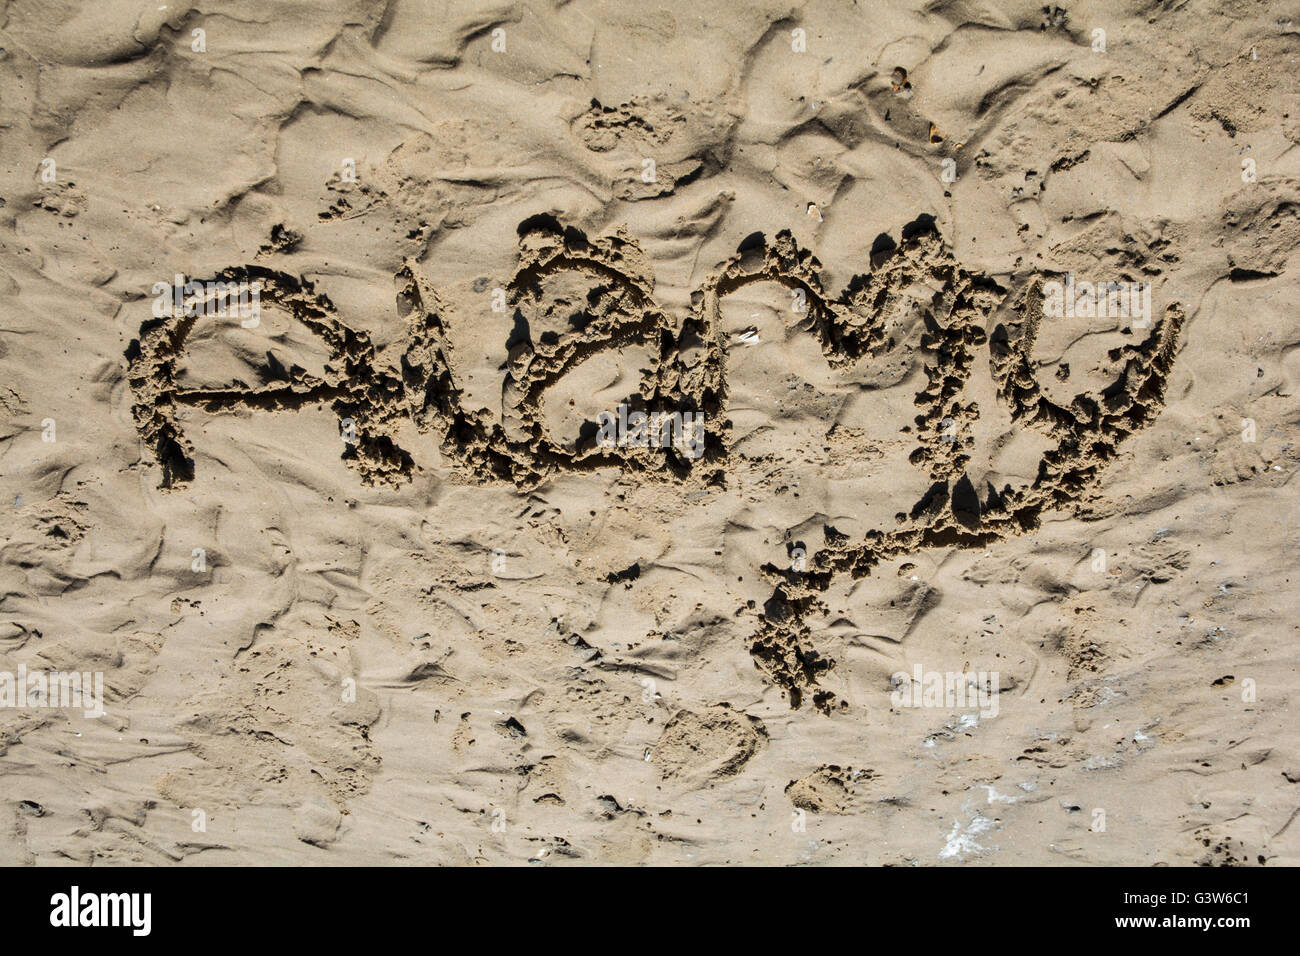 Le mot "Alamy' dessiné dans le sable. Banque D'Images